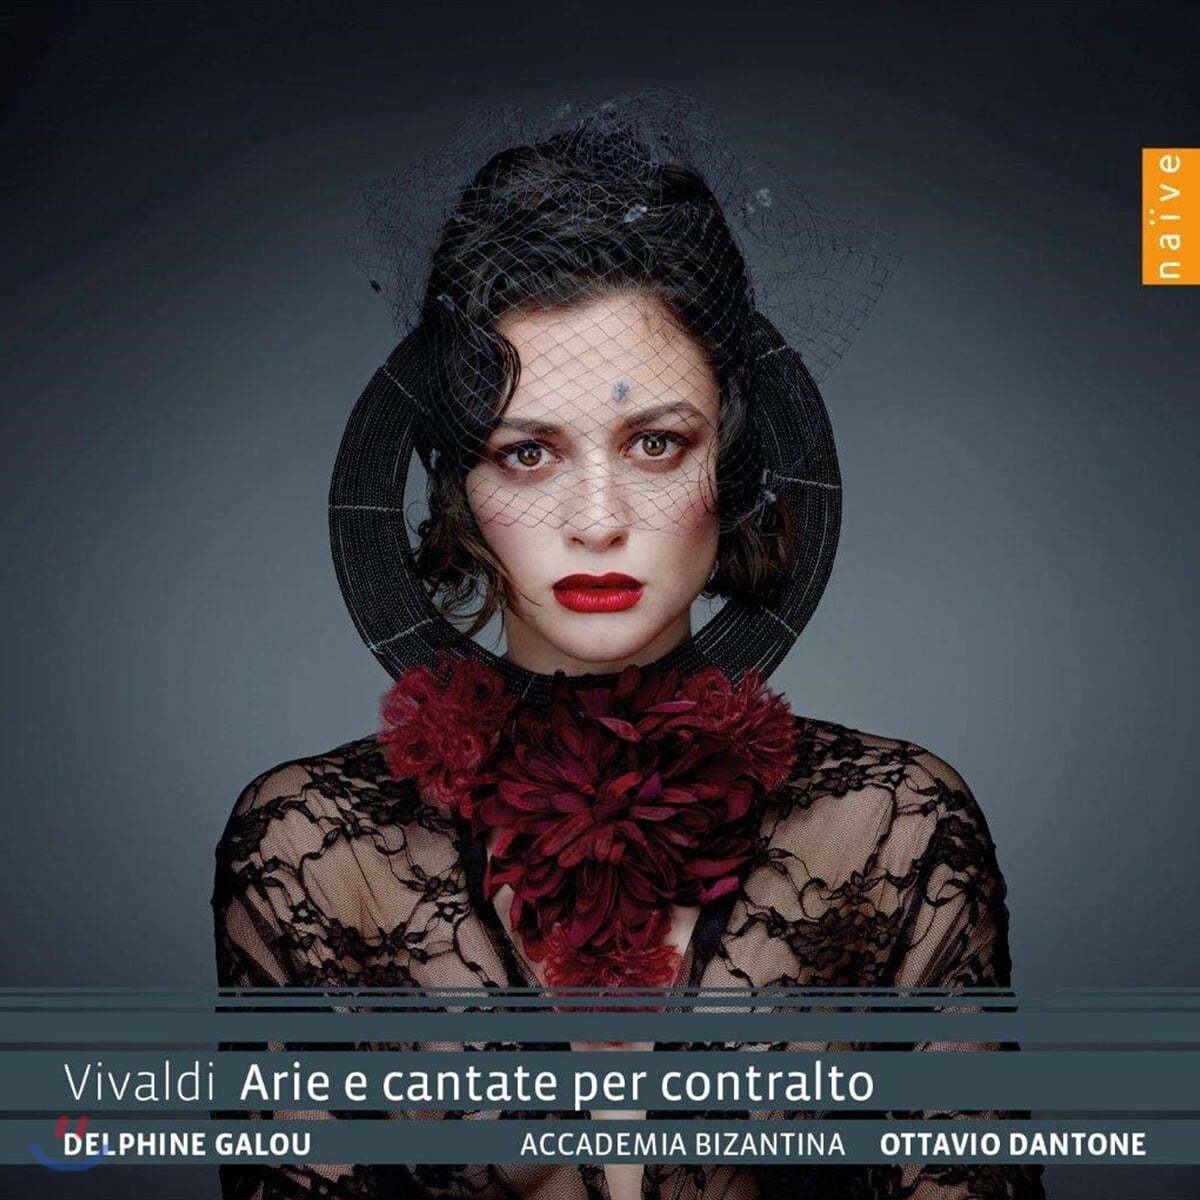 Delphine Galou 비발디: 콘트랄토를 위한 아리아와 칸타타 (Vivaldi: Arie e cantate per contralto)